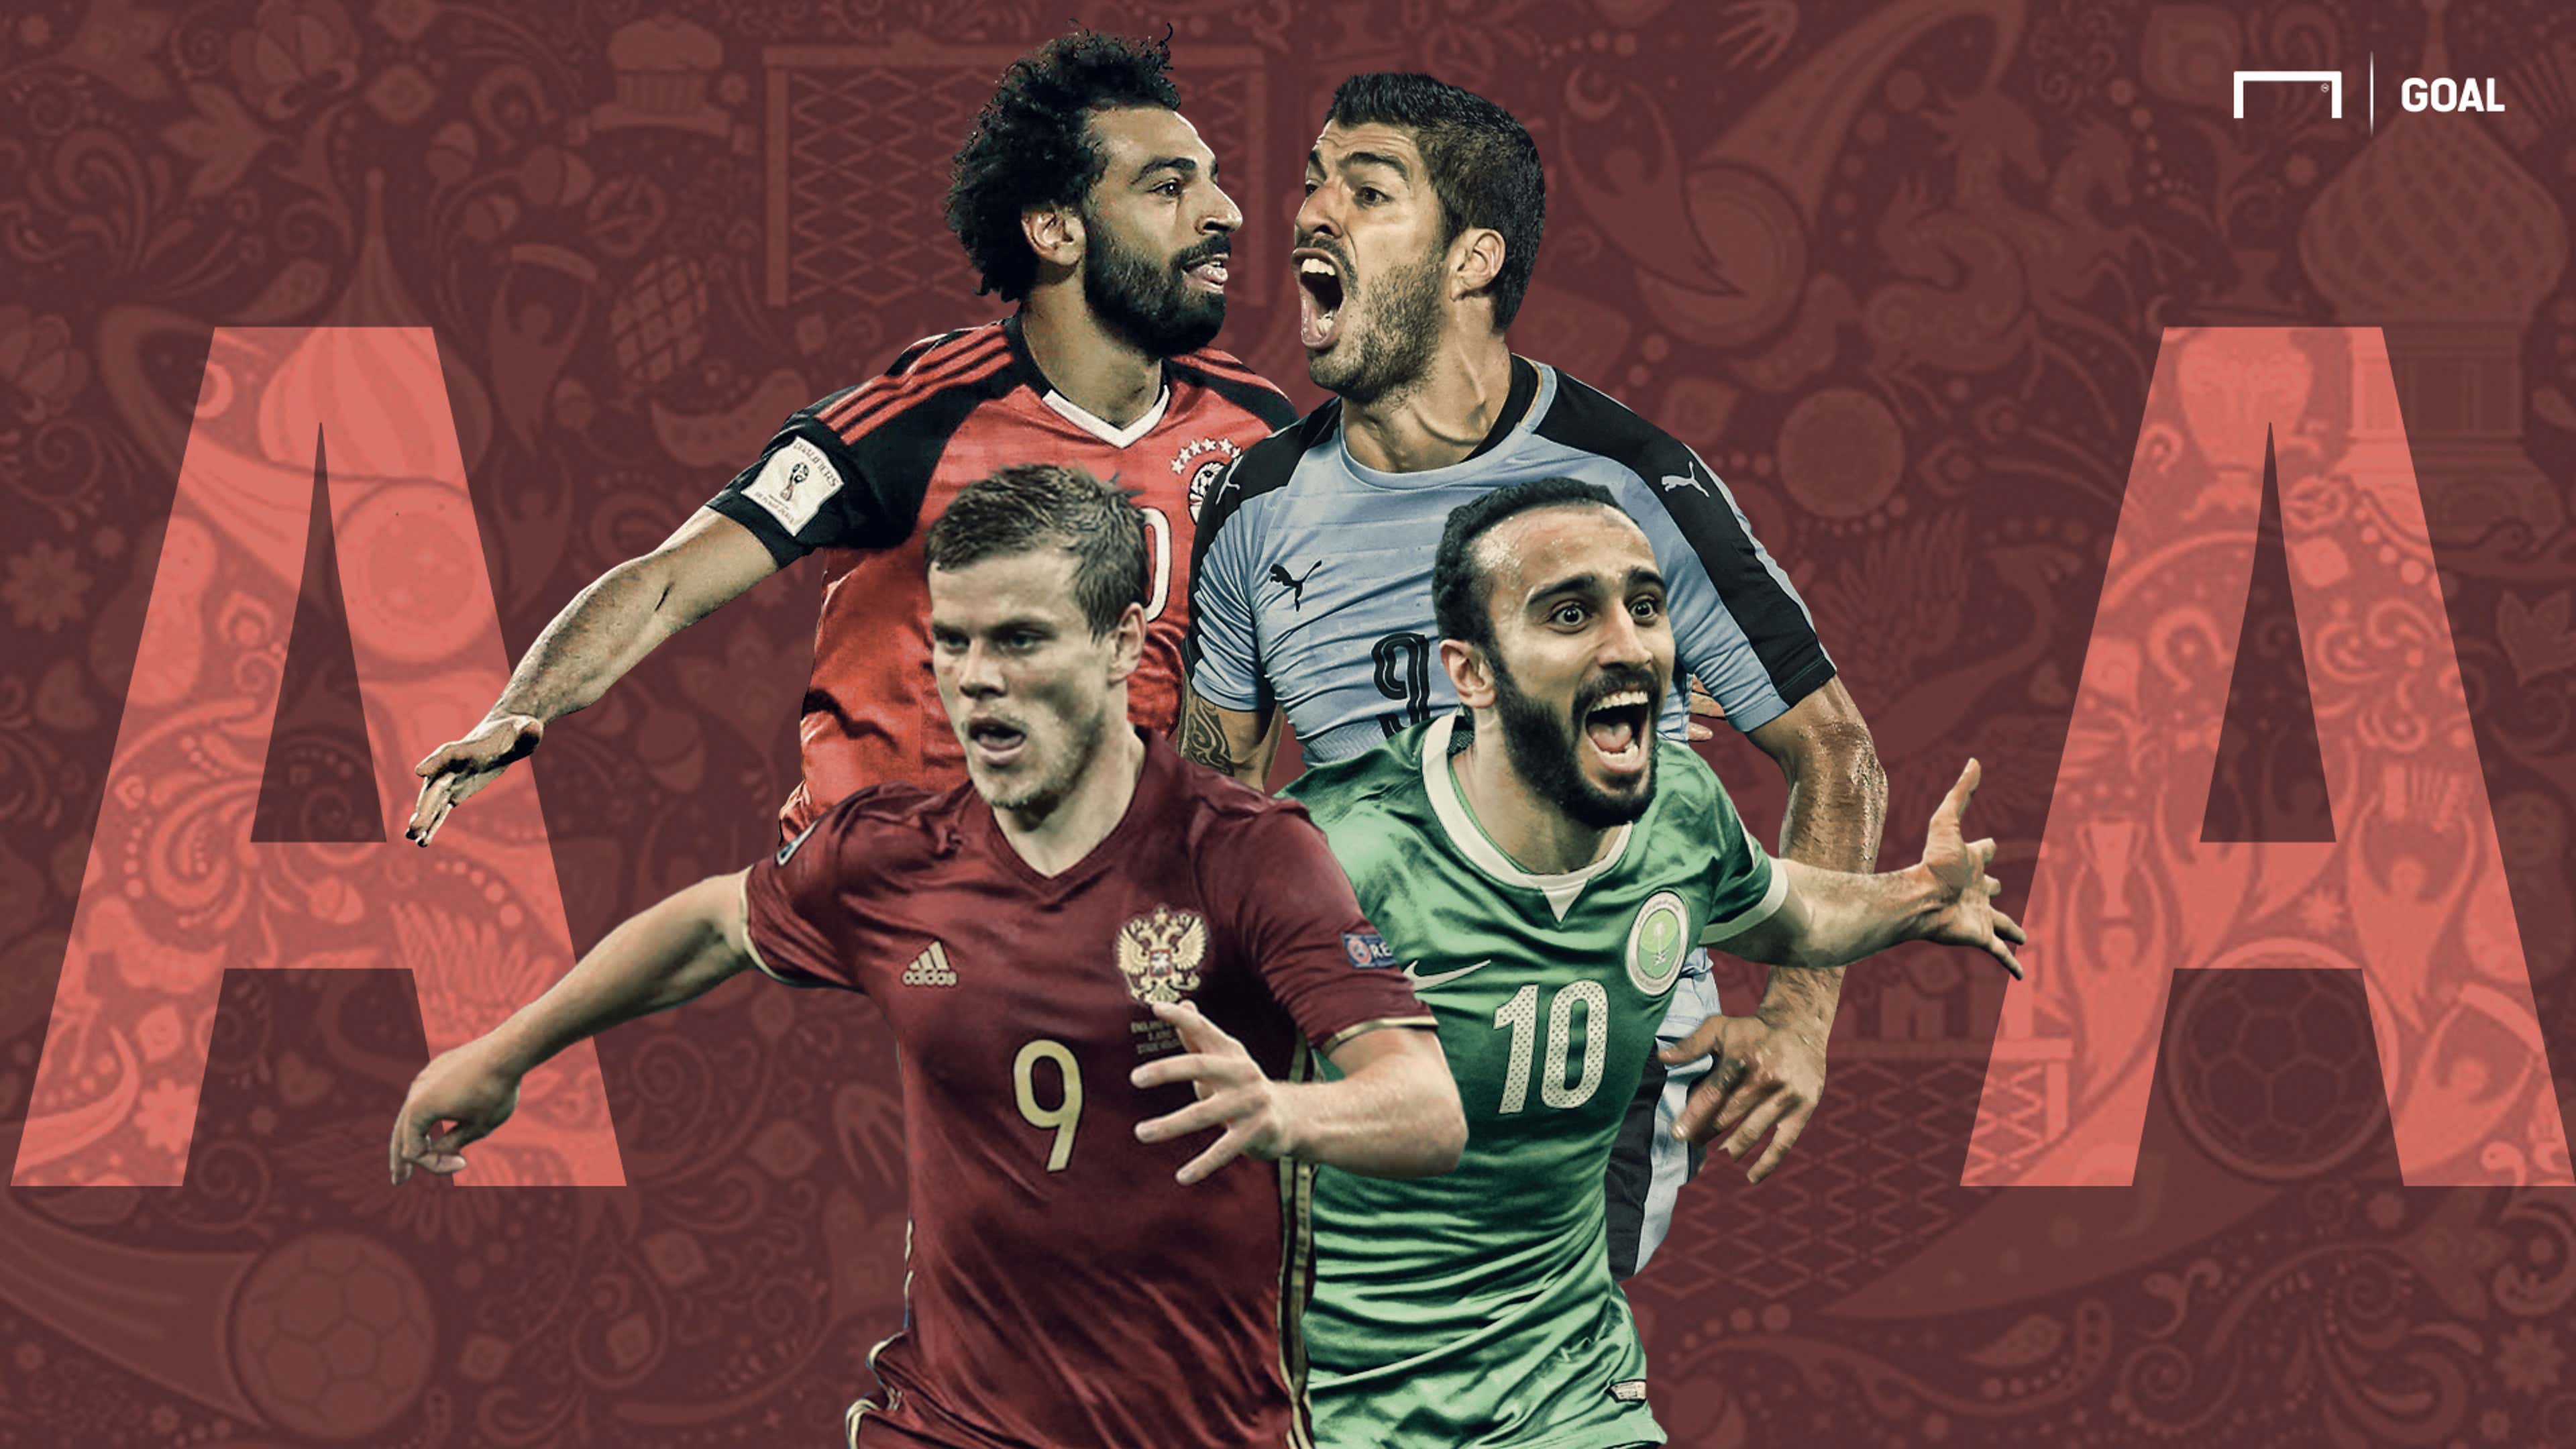 Egito, Copa do Mundo Rússia 2018